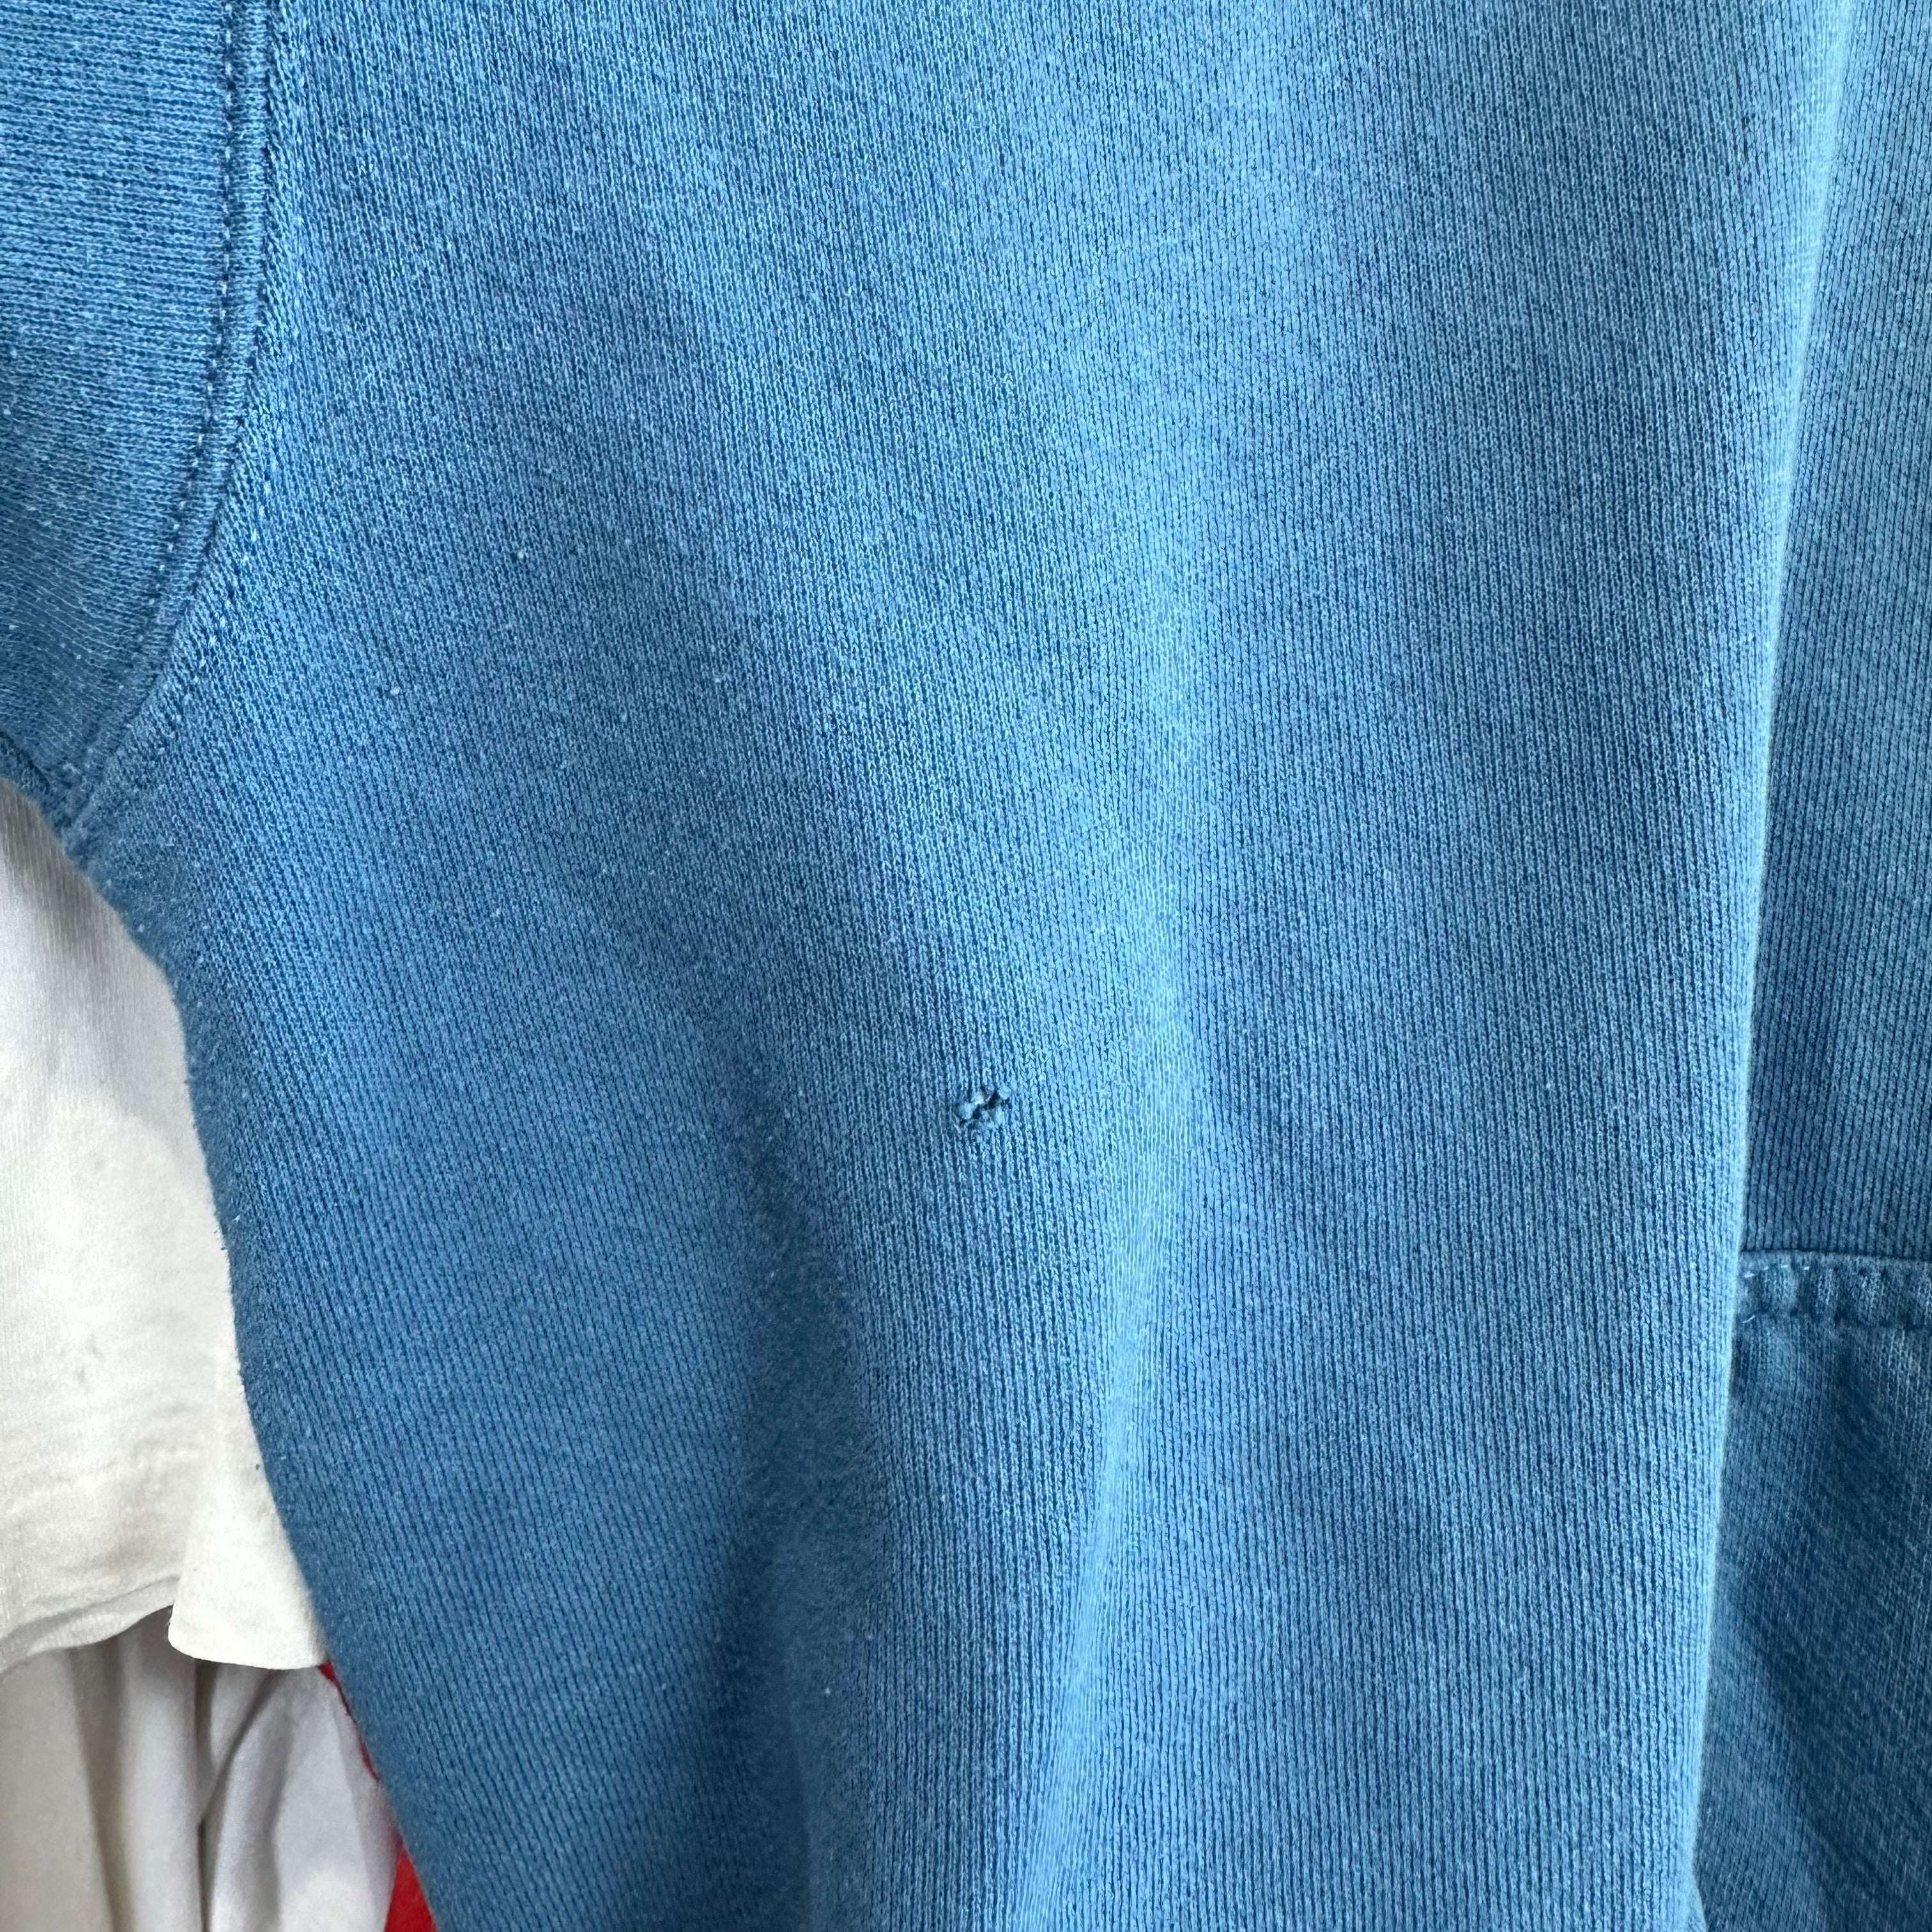 Light Blue Blank Nike Hoodie Sweatshirt